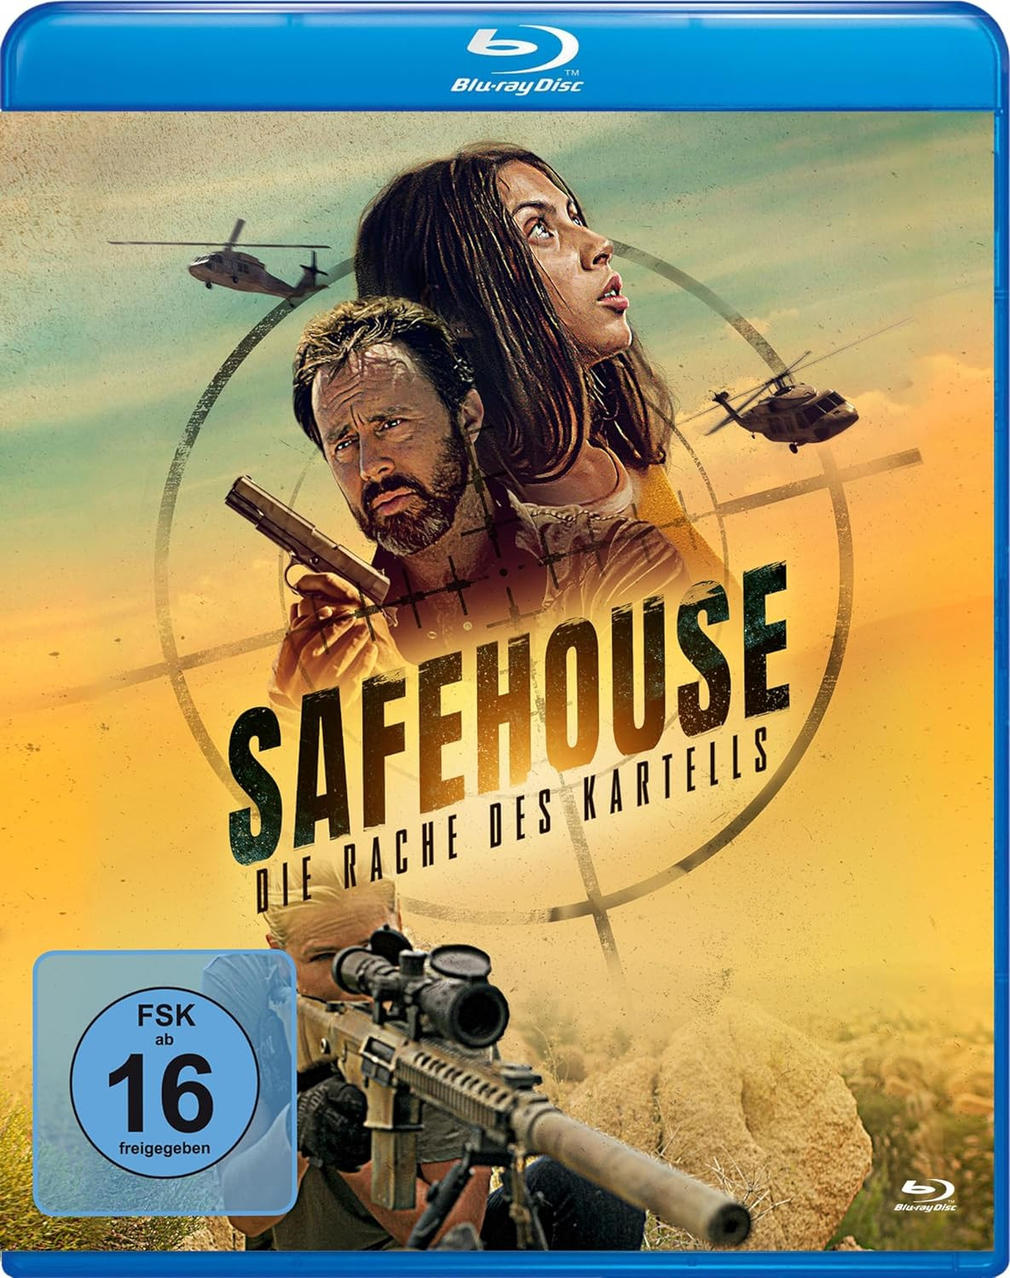 Kartells des Rache Safehouse Die Blu-ray -